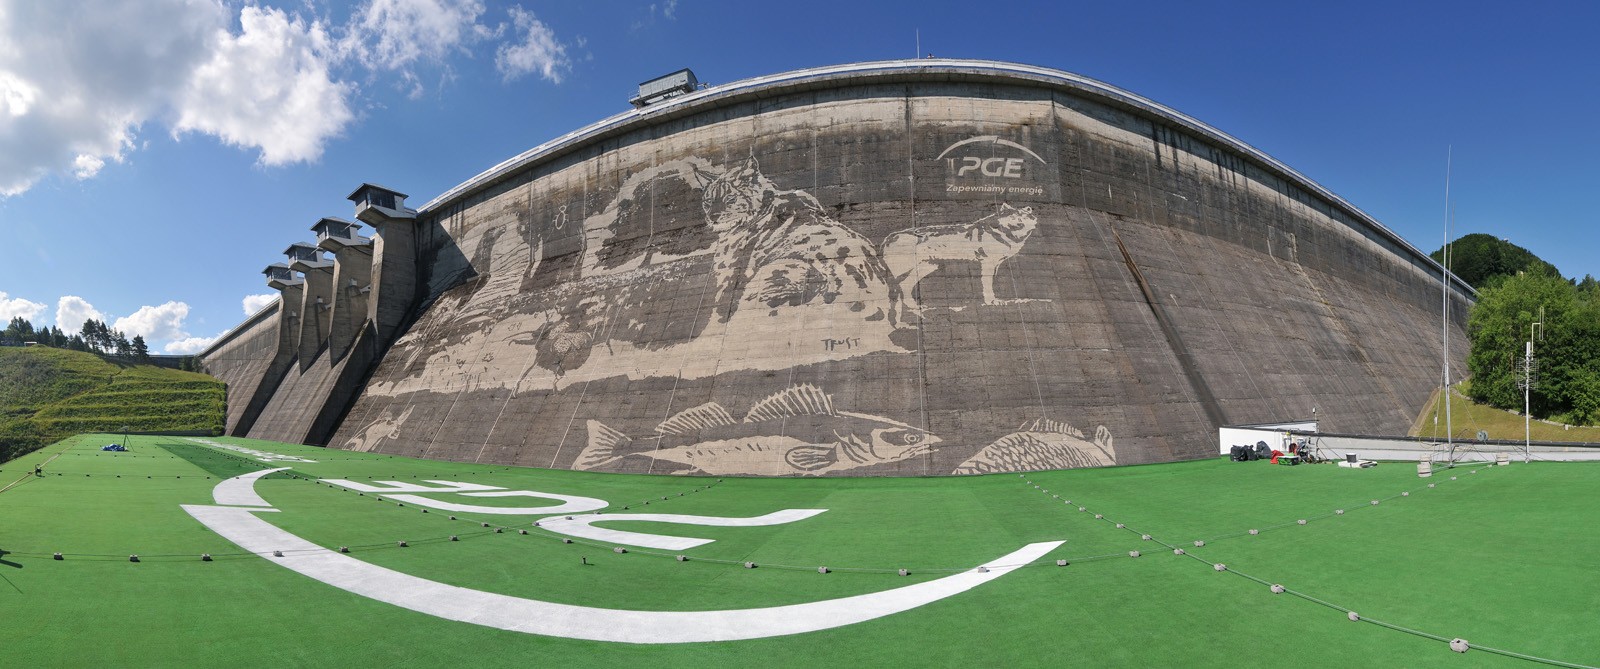 Reverse Graffiti w Solinie dla PGE na zaporze wodnej | Mural clean graffiti na tamie w Solinie - Ekologiczny mural | Portfolio